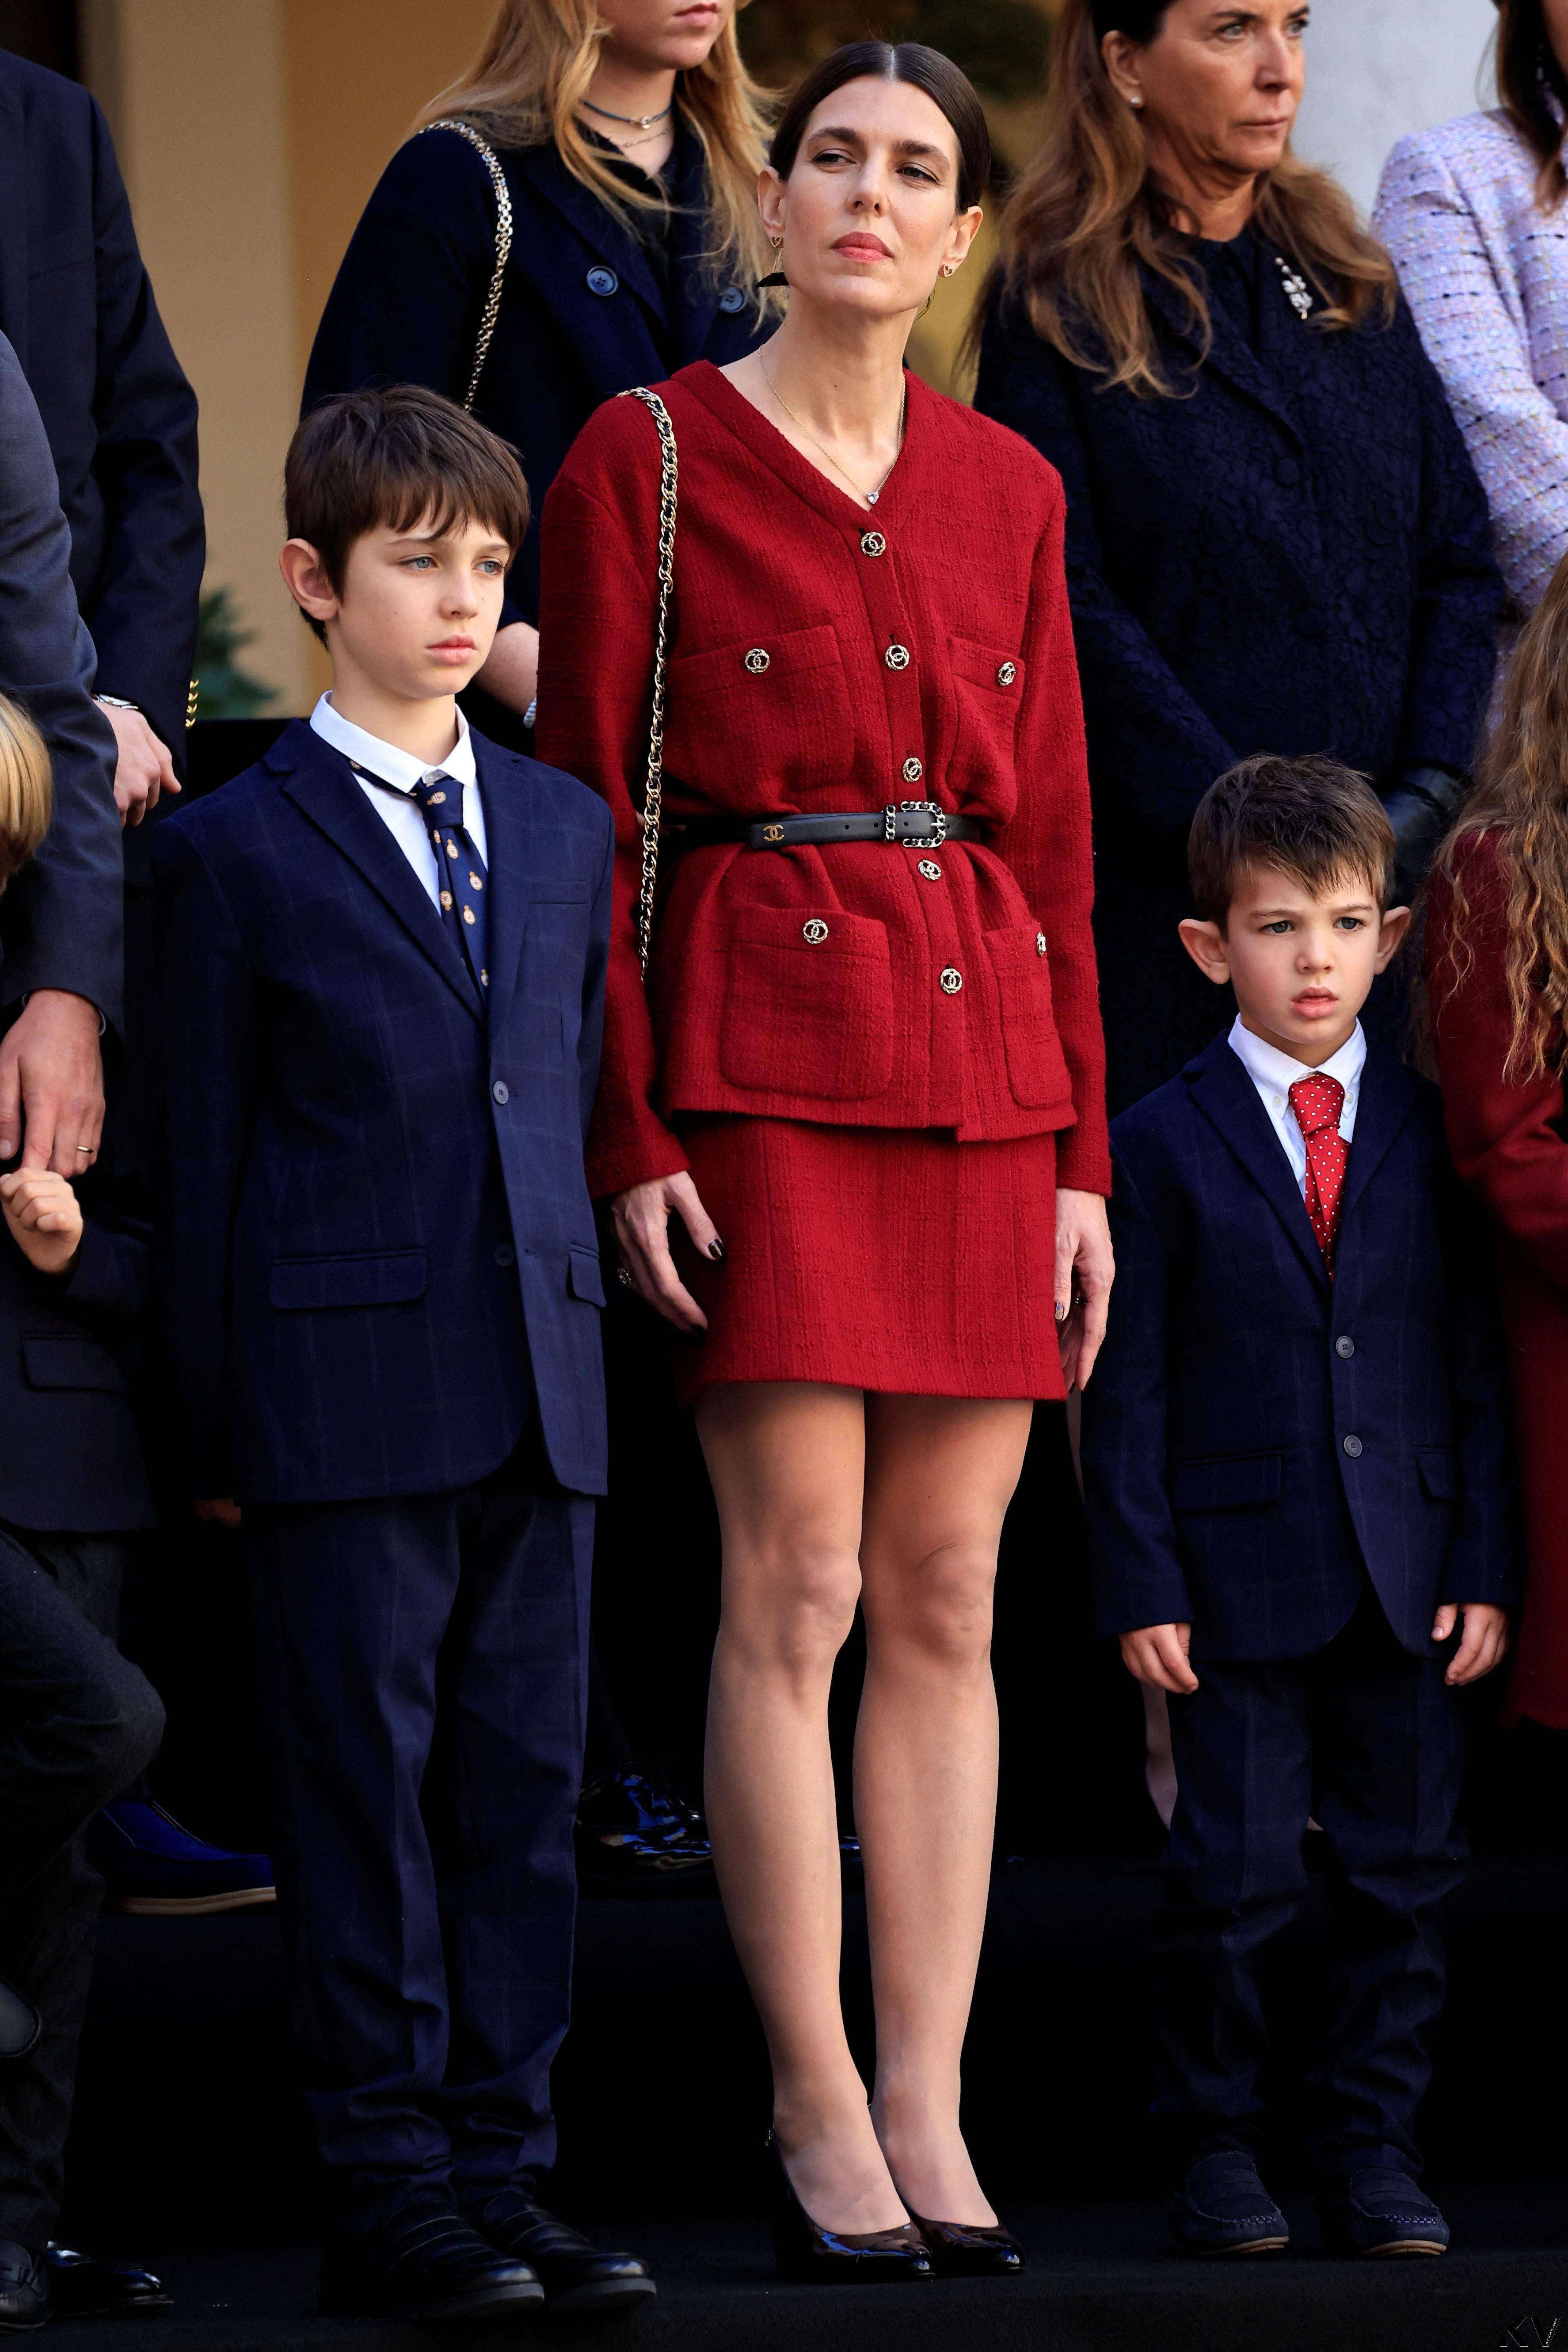 “欧洲最美王子妃”红装庆摩纳哥生日　夏琳王妃贵气珠宝胜出 时尚穿搭 图4张